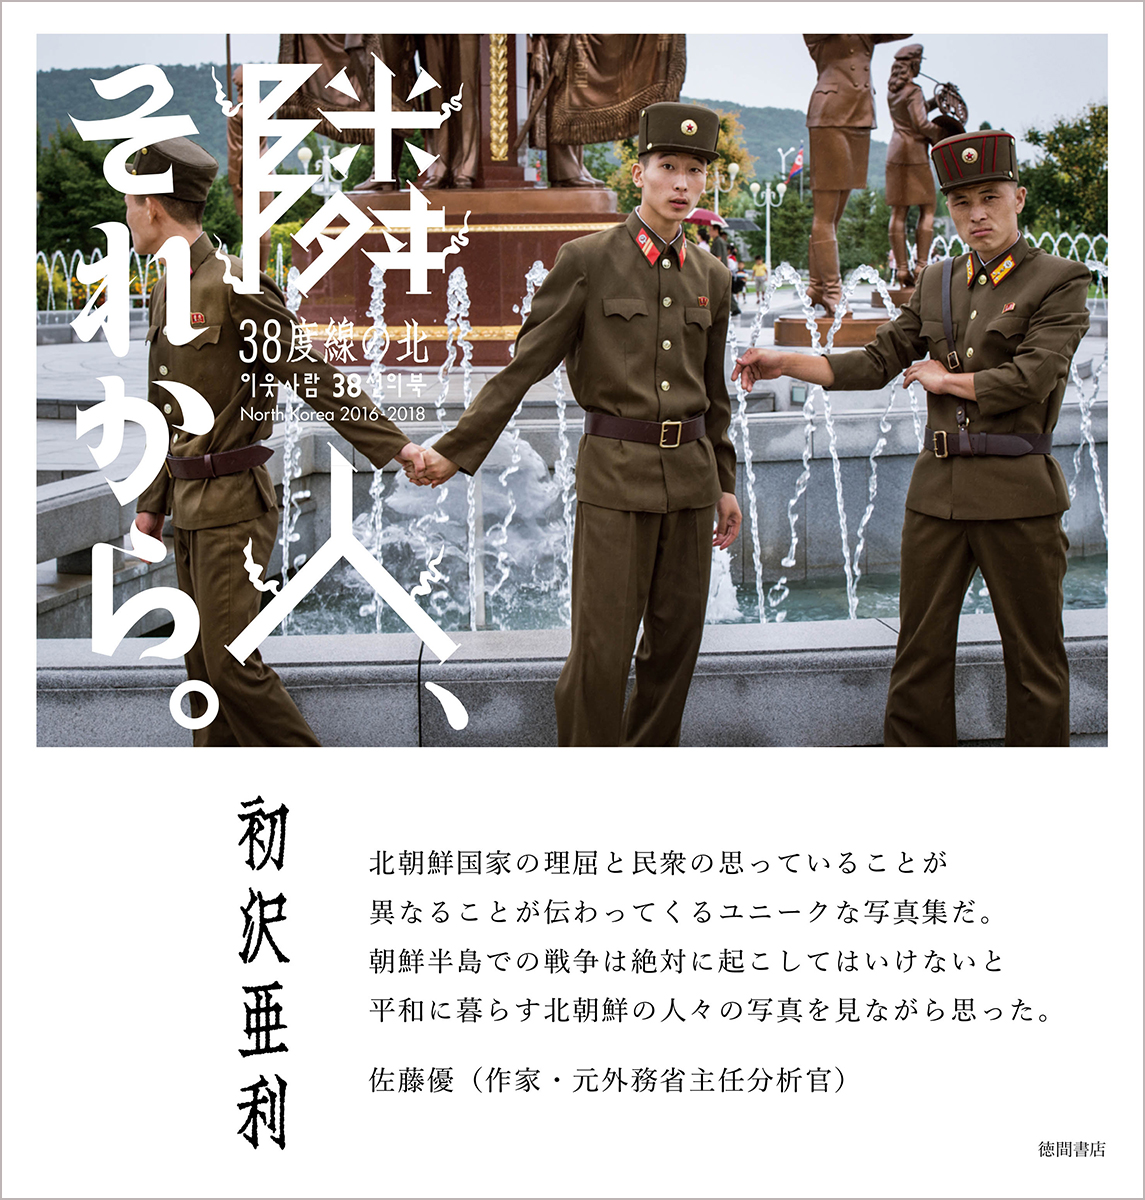 6月29日 緊急開催 北朝鮮の日常を生きる人々を捉えた映画 ワンダーランド北朝鮮 と 話題の写真集 隣人 それから 38度線の北 コラボイベント開催決定 徳間書店のプレスリリース